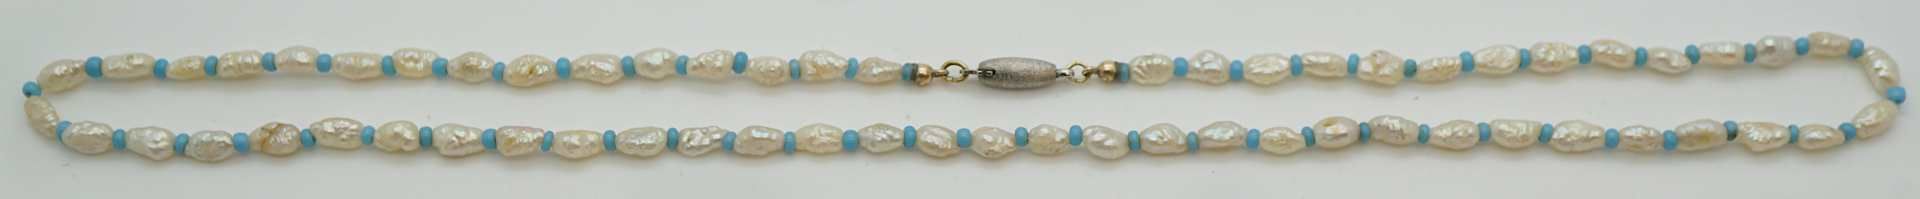 1 Kette Perlen blaue Steine Verschluss WG 14ct.